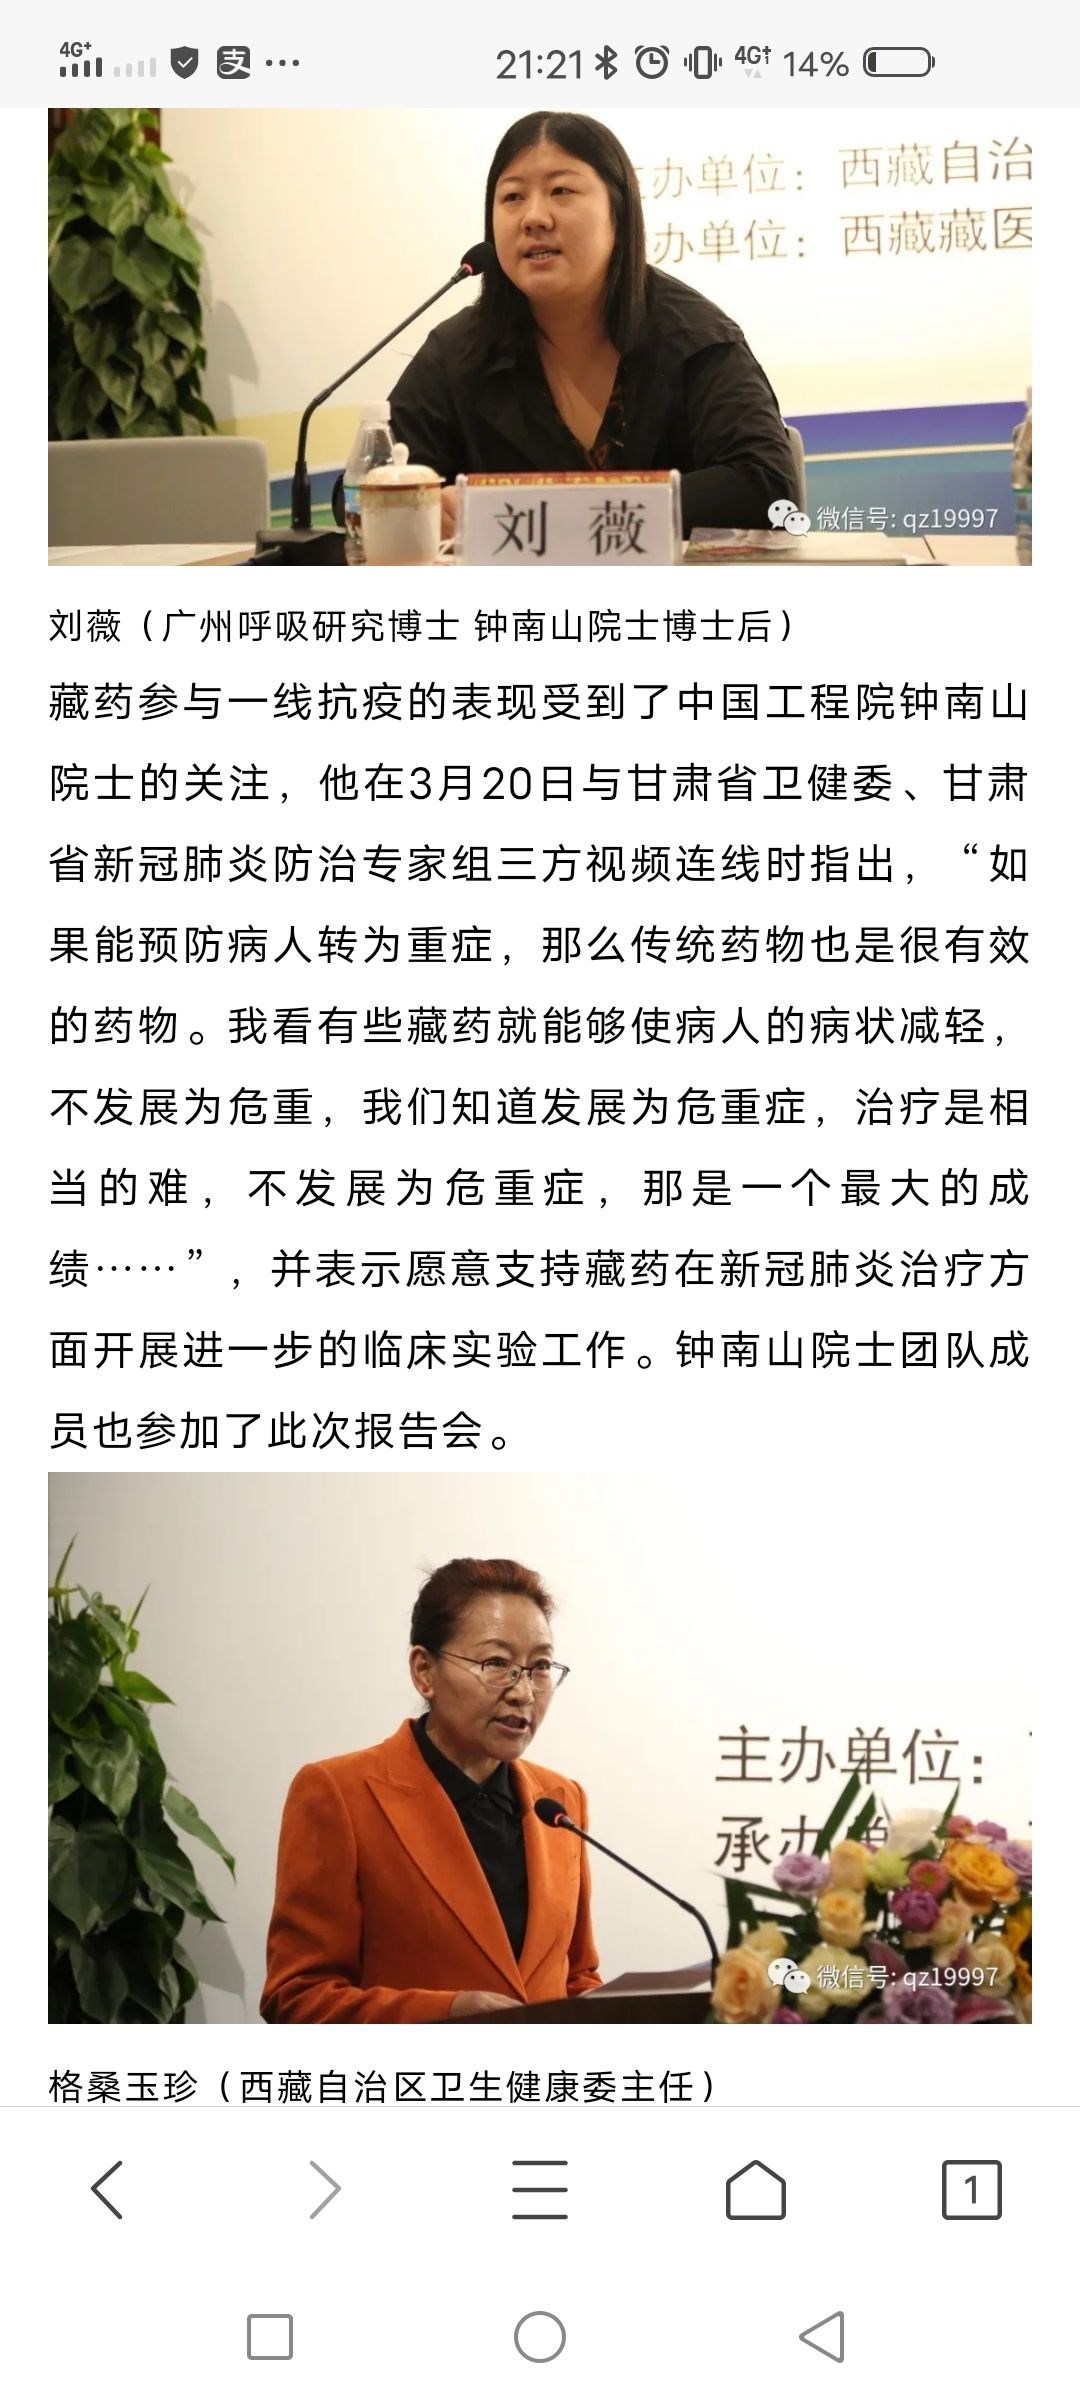 西藏自治区卫生健康委主任格桑玉珍在讲话中对甘肃专家将仁青芒觉胶囊